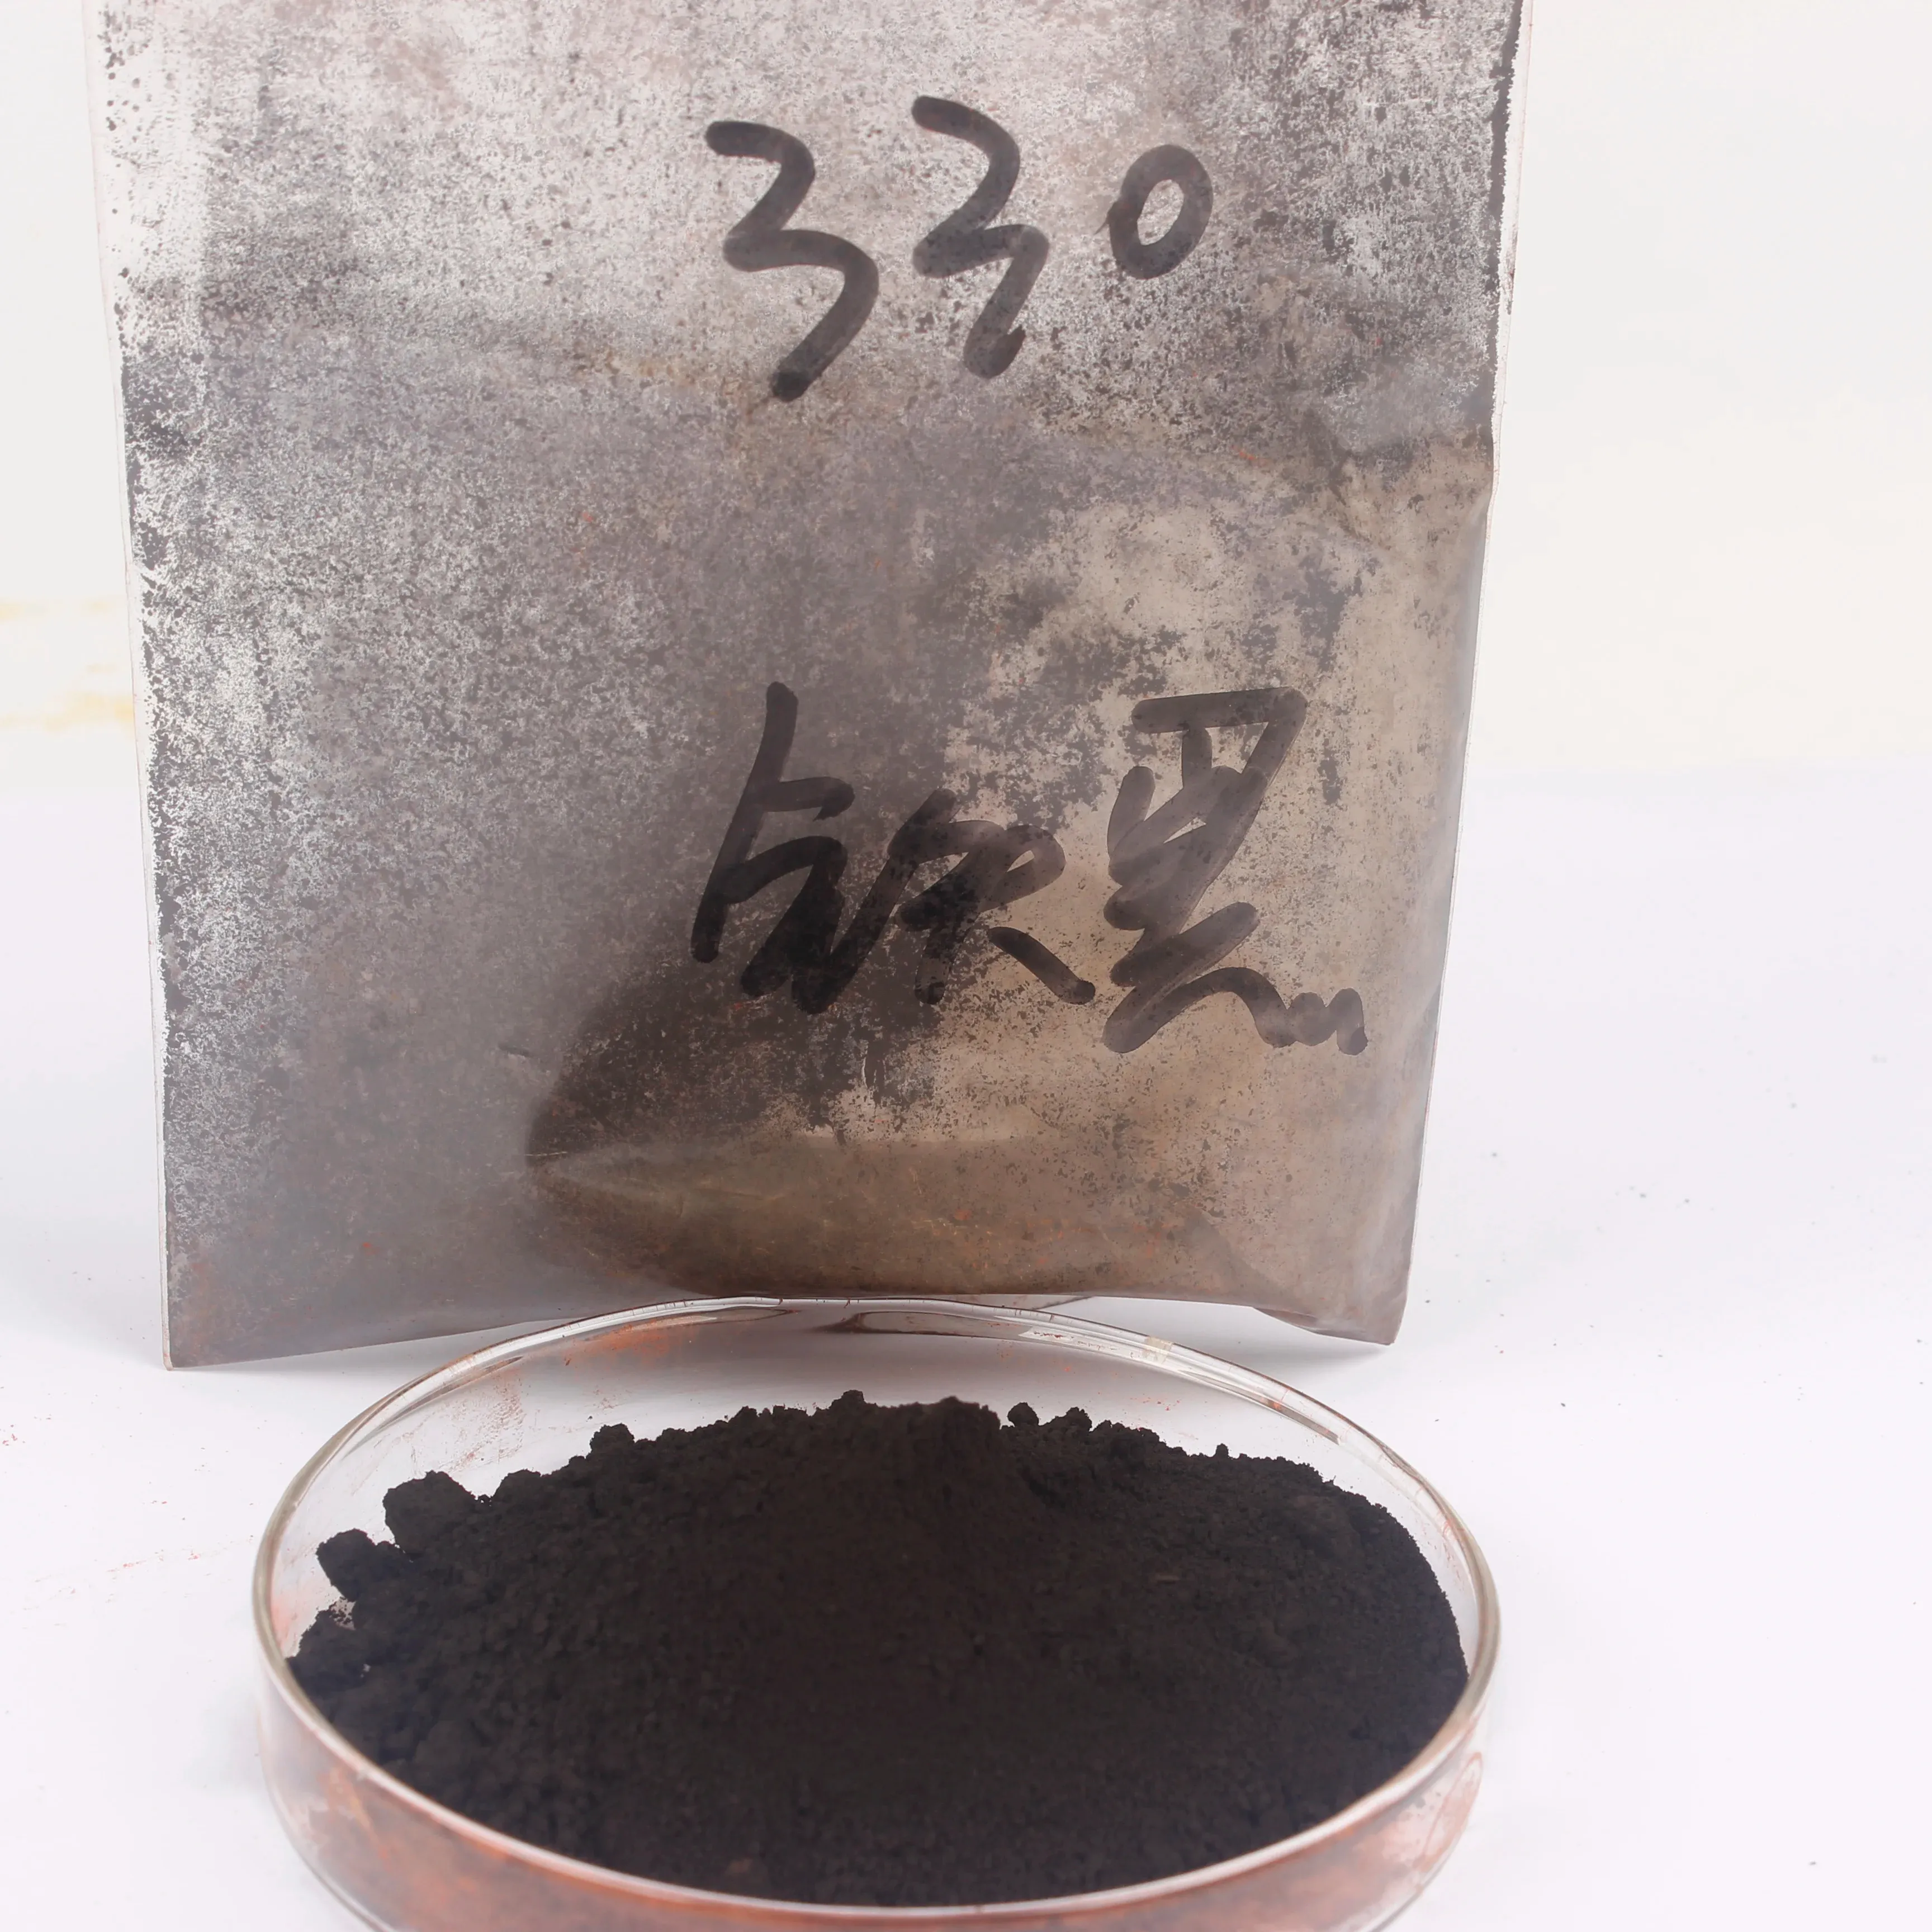 25kg Saco Óxido De Ferro Preto Fe3O4 Pigmento Em Pó 330 Preço De Fábrica Para Colorir Cultural Pedra Cimento Tijolo De Concreto Telhas